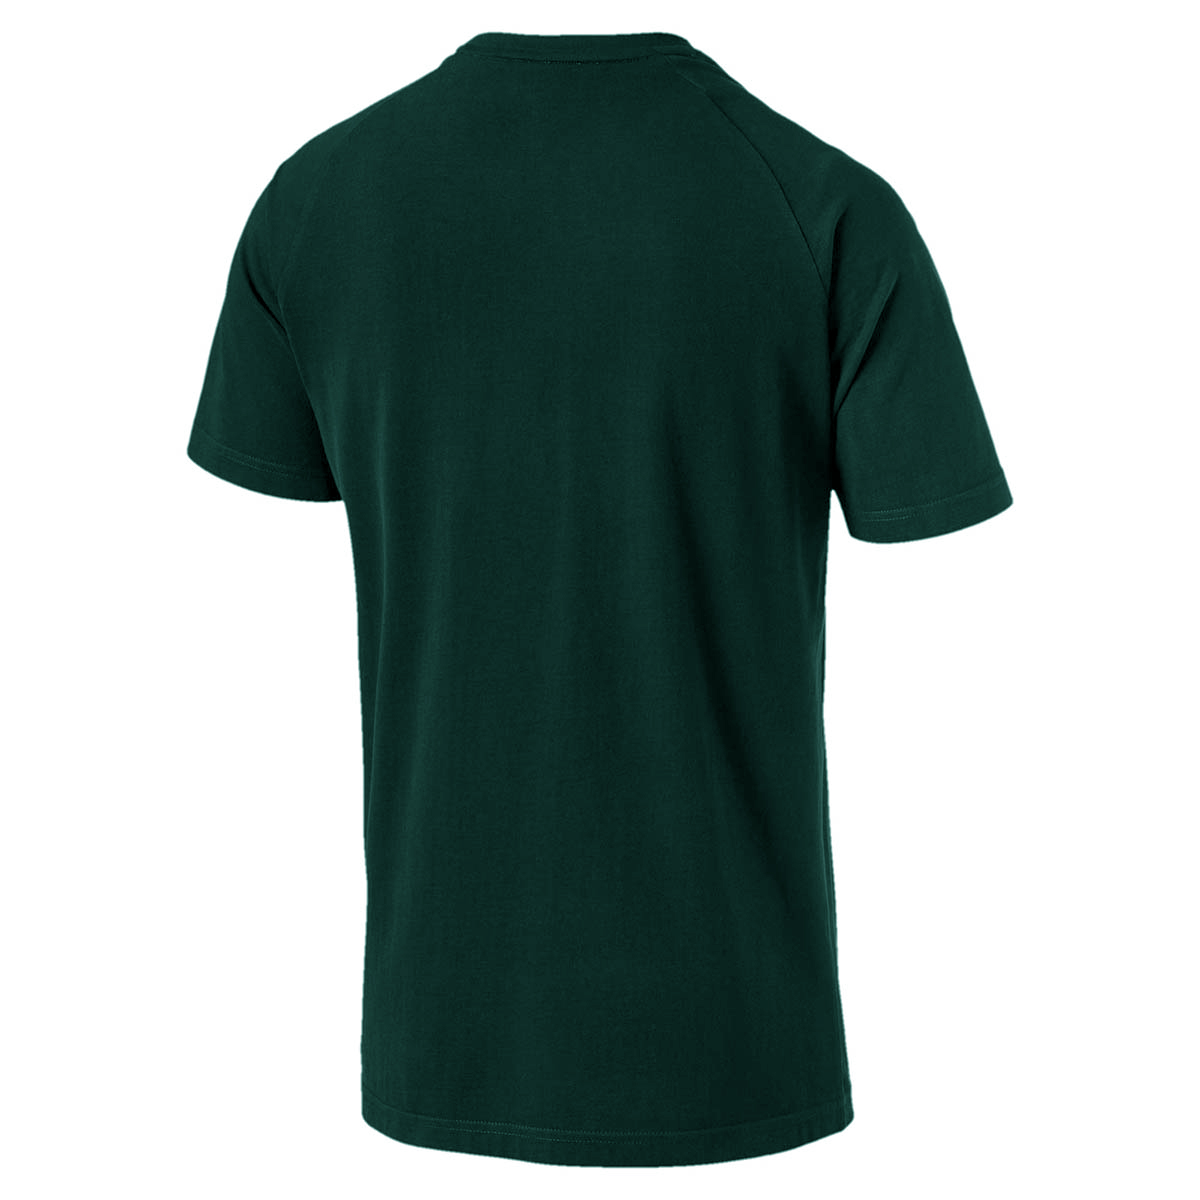 PUMA Athletics Graphic Tee Herren T-shirt Sportswear 855134 30 grün